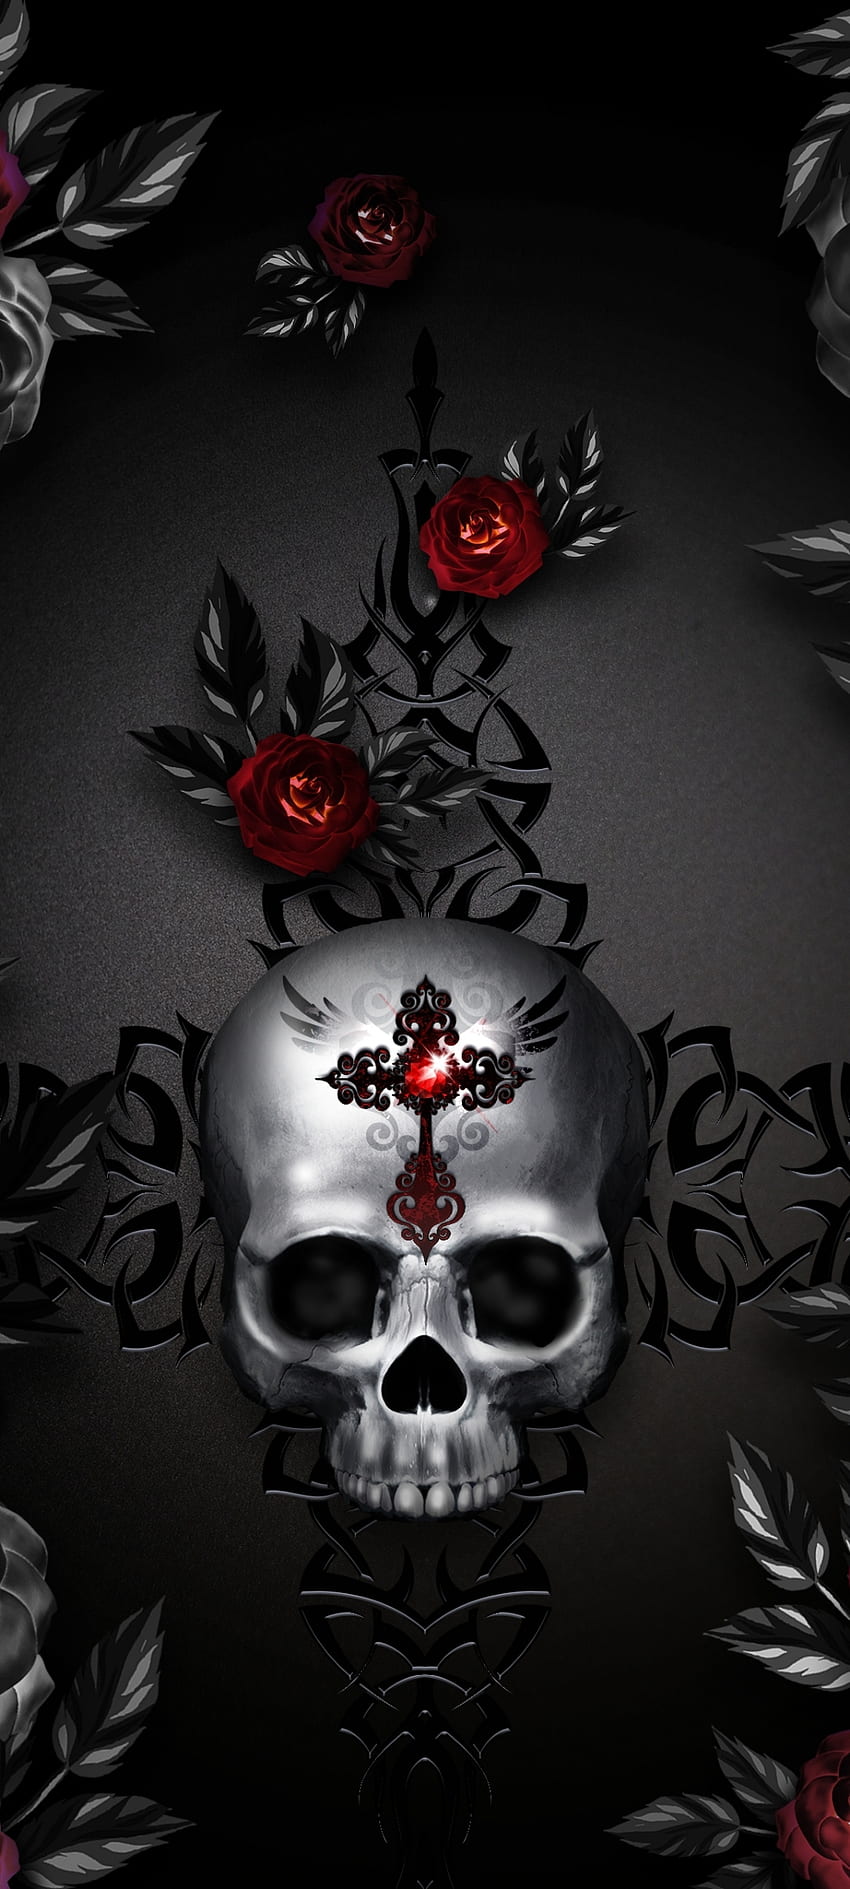 Skulls  Roses  Black  Skull wallpaper Skulls and roses Skull art